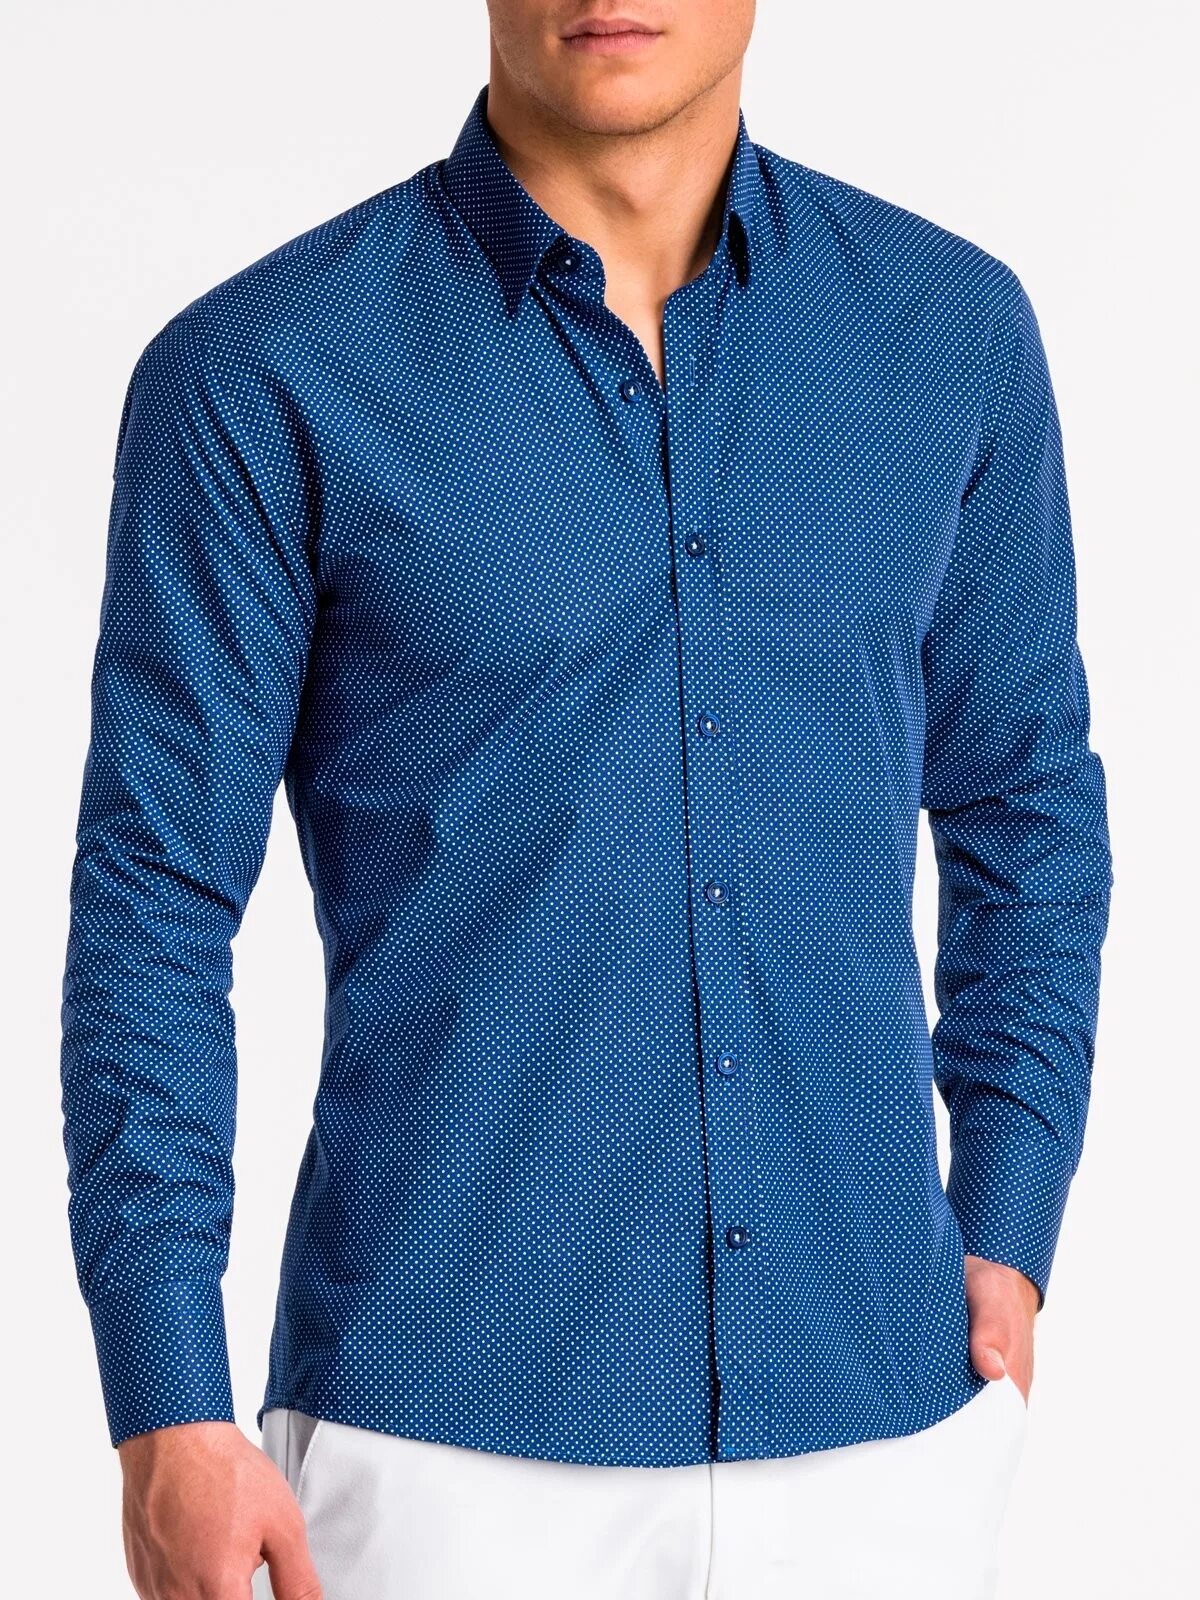 Рубашка мужская. Синяя рубашка. Светло синяя рубашка мужская. Сорочка мужская синяя. Нижняя рубашка мужская